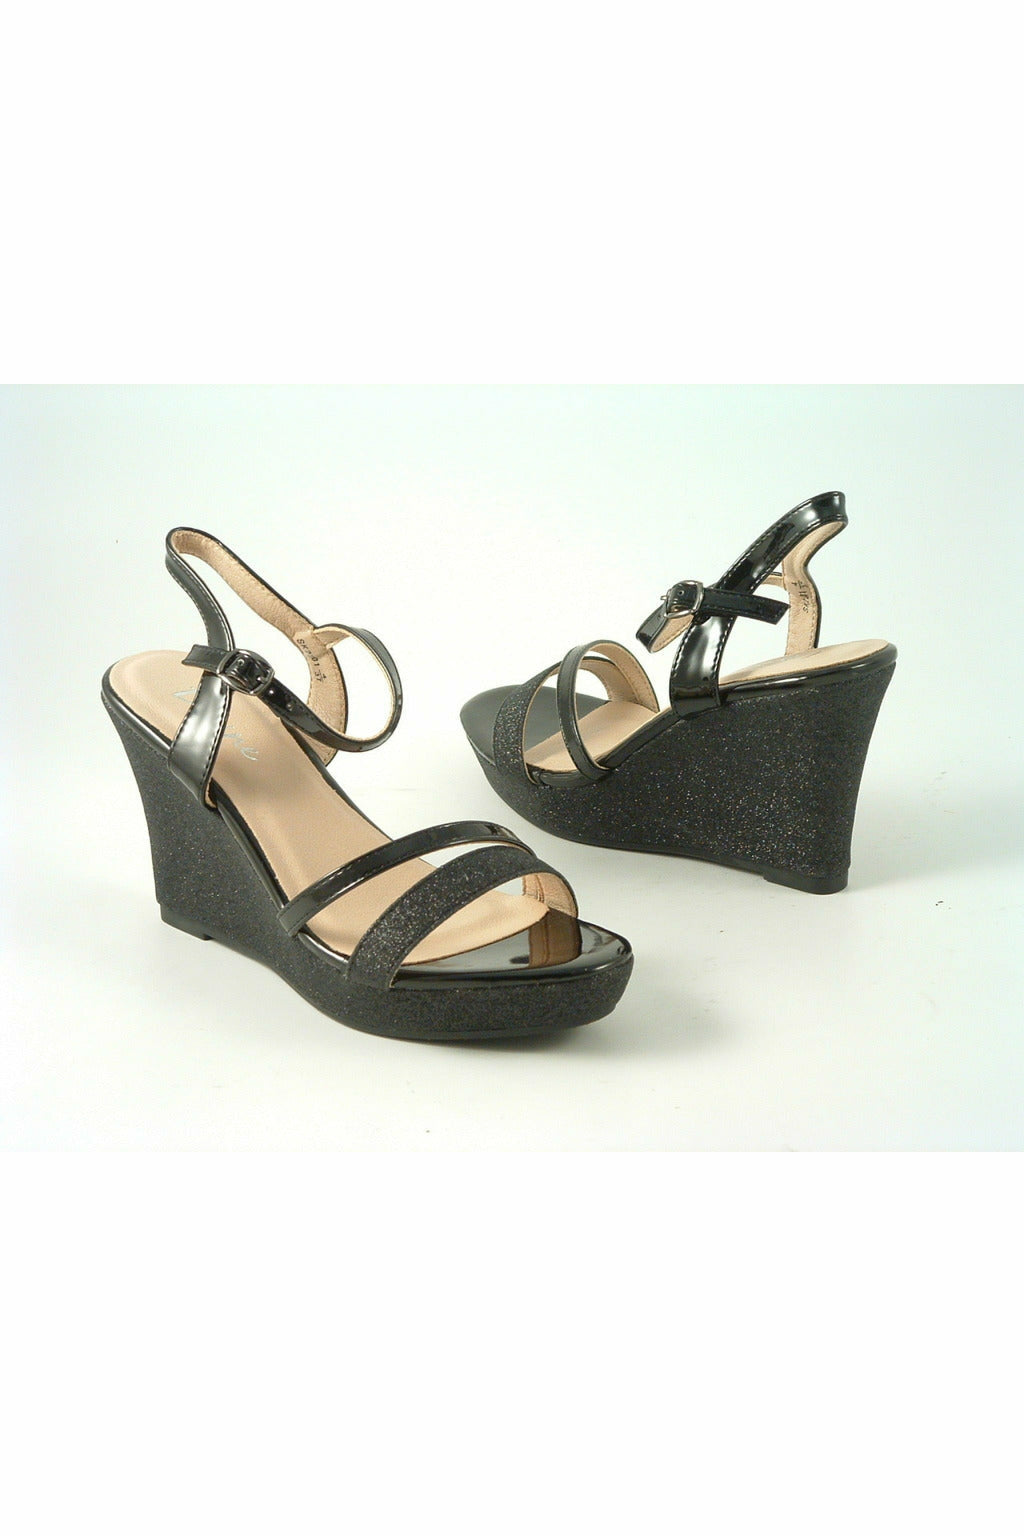 Divine High Heel Glitter Wedge Black Sandal SK2201